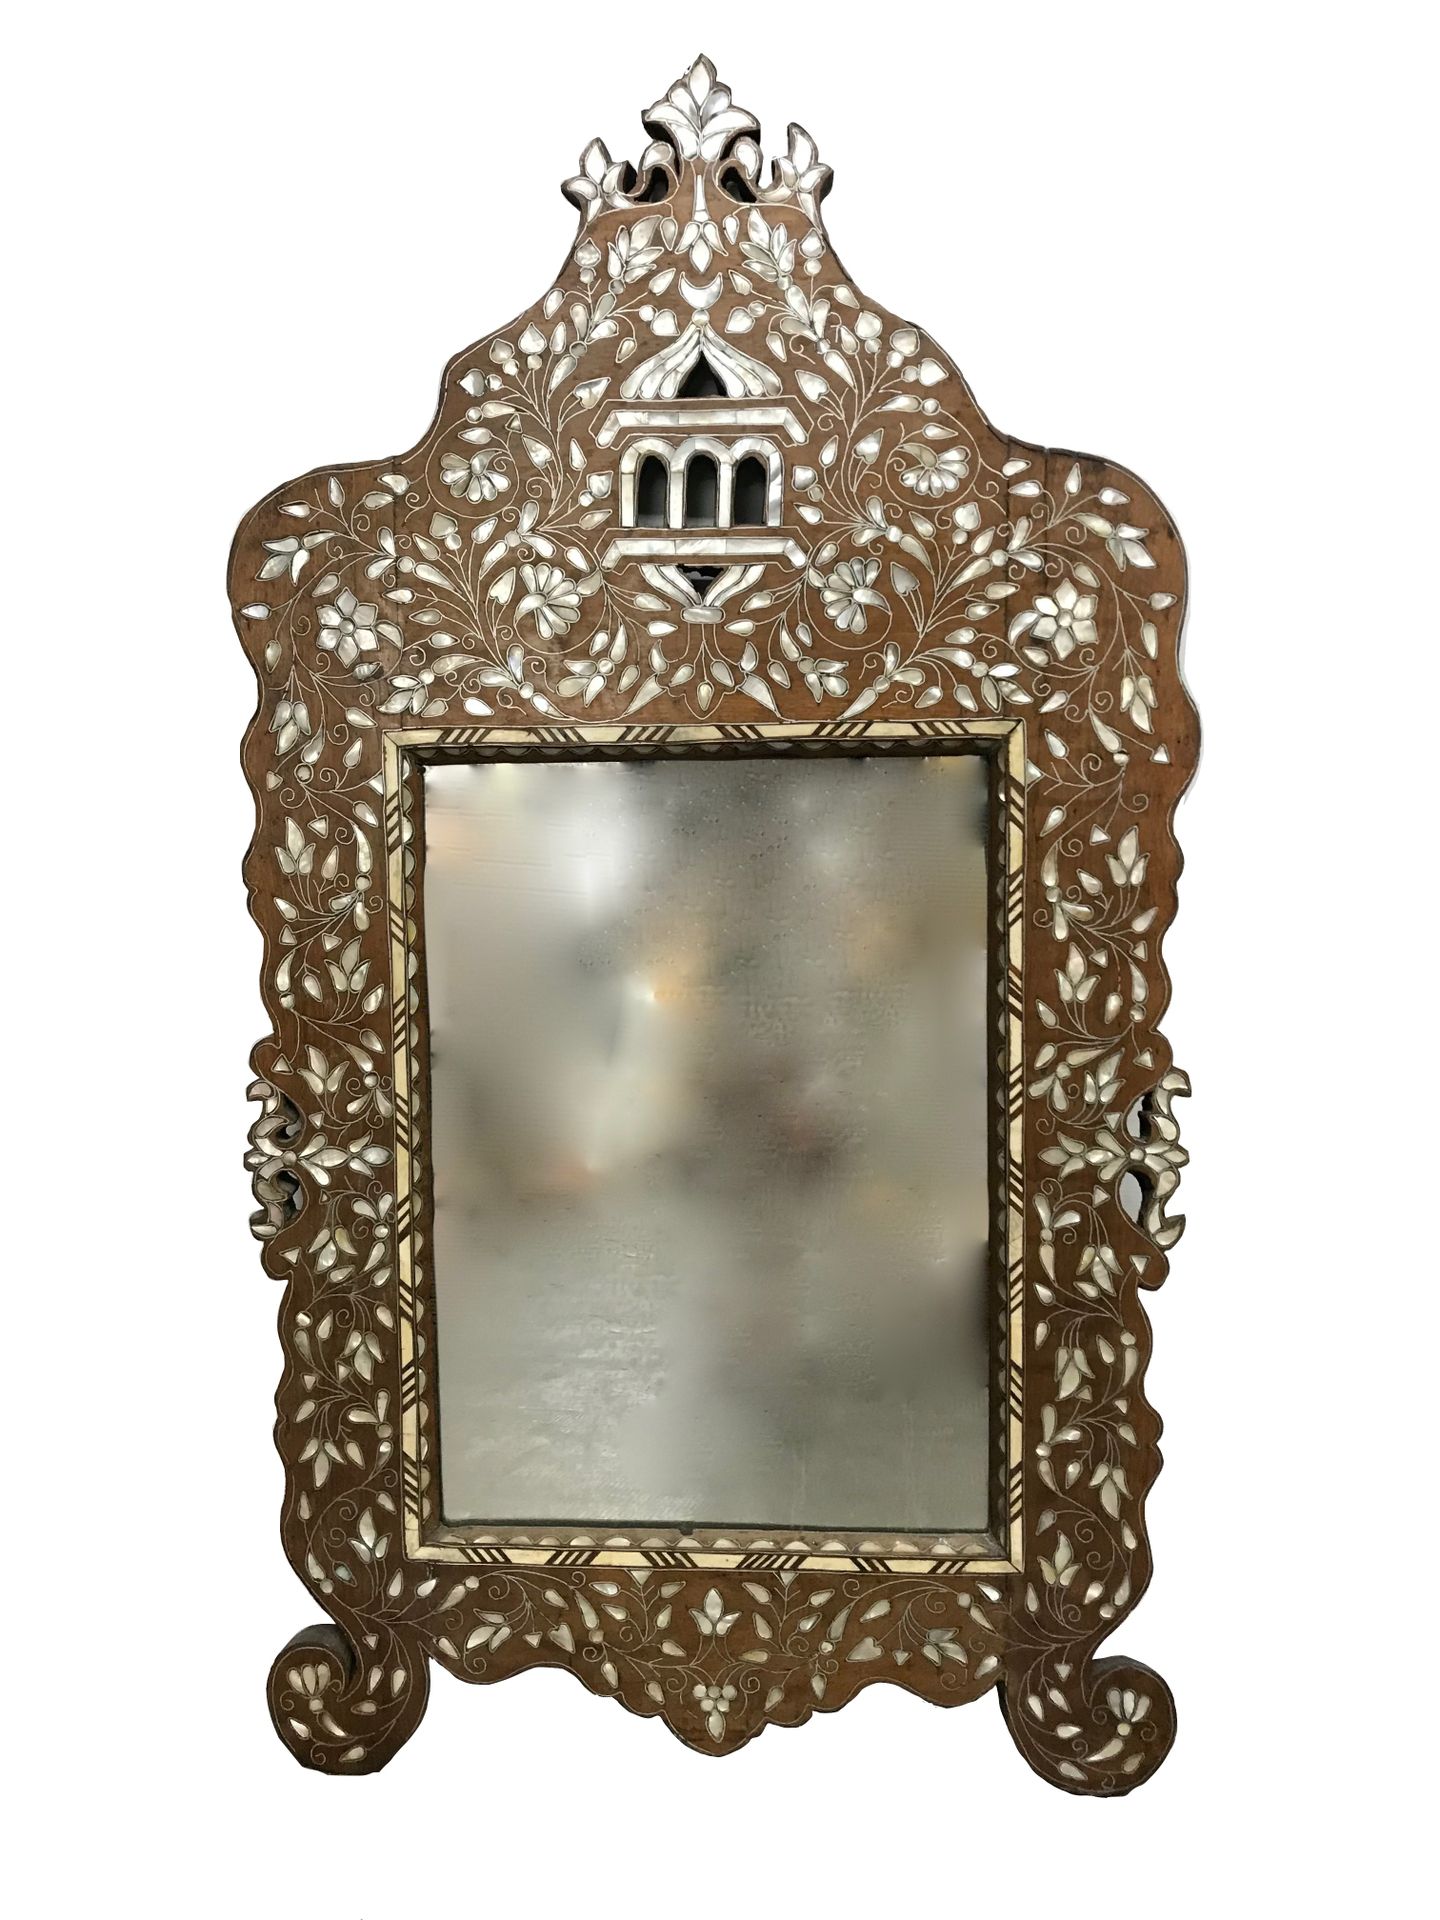 IRAN Specchio con intarsi in madreperla

H. 114 cm - L. 62 cm